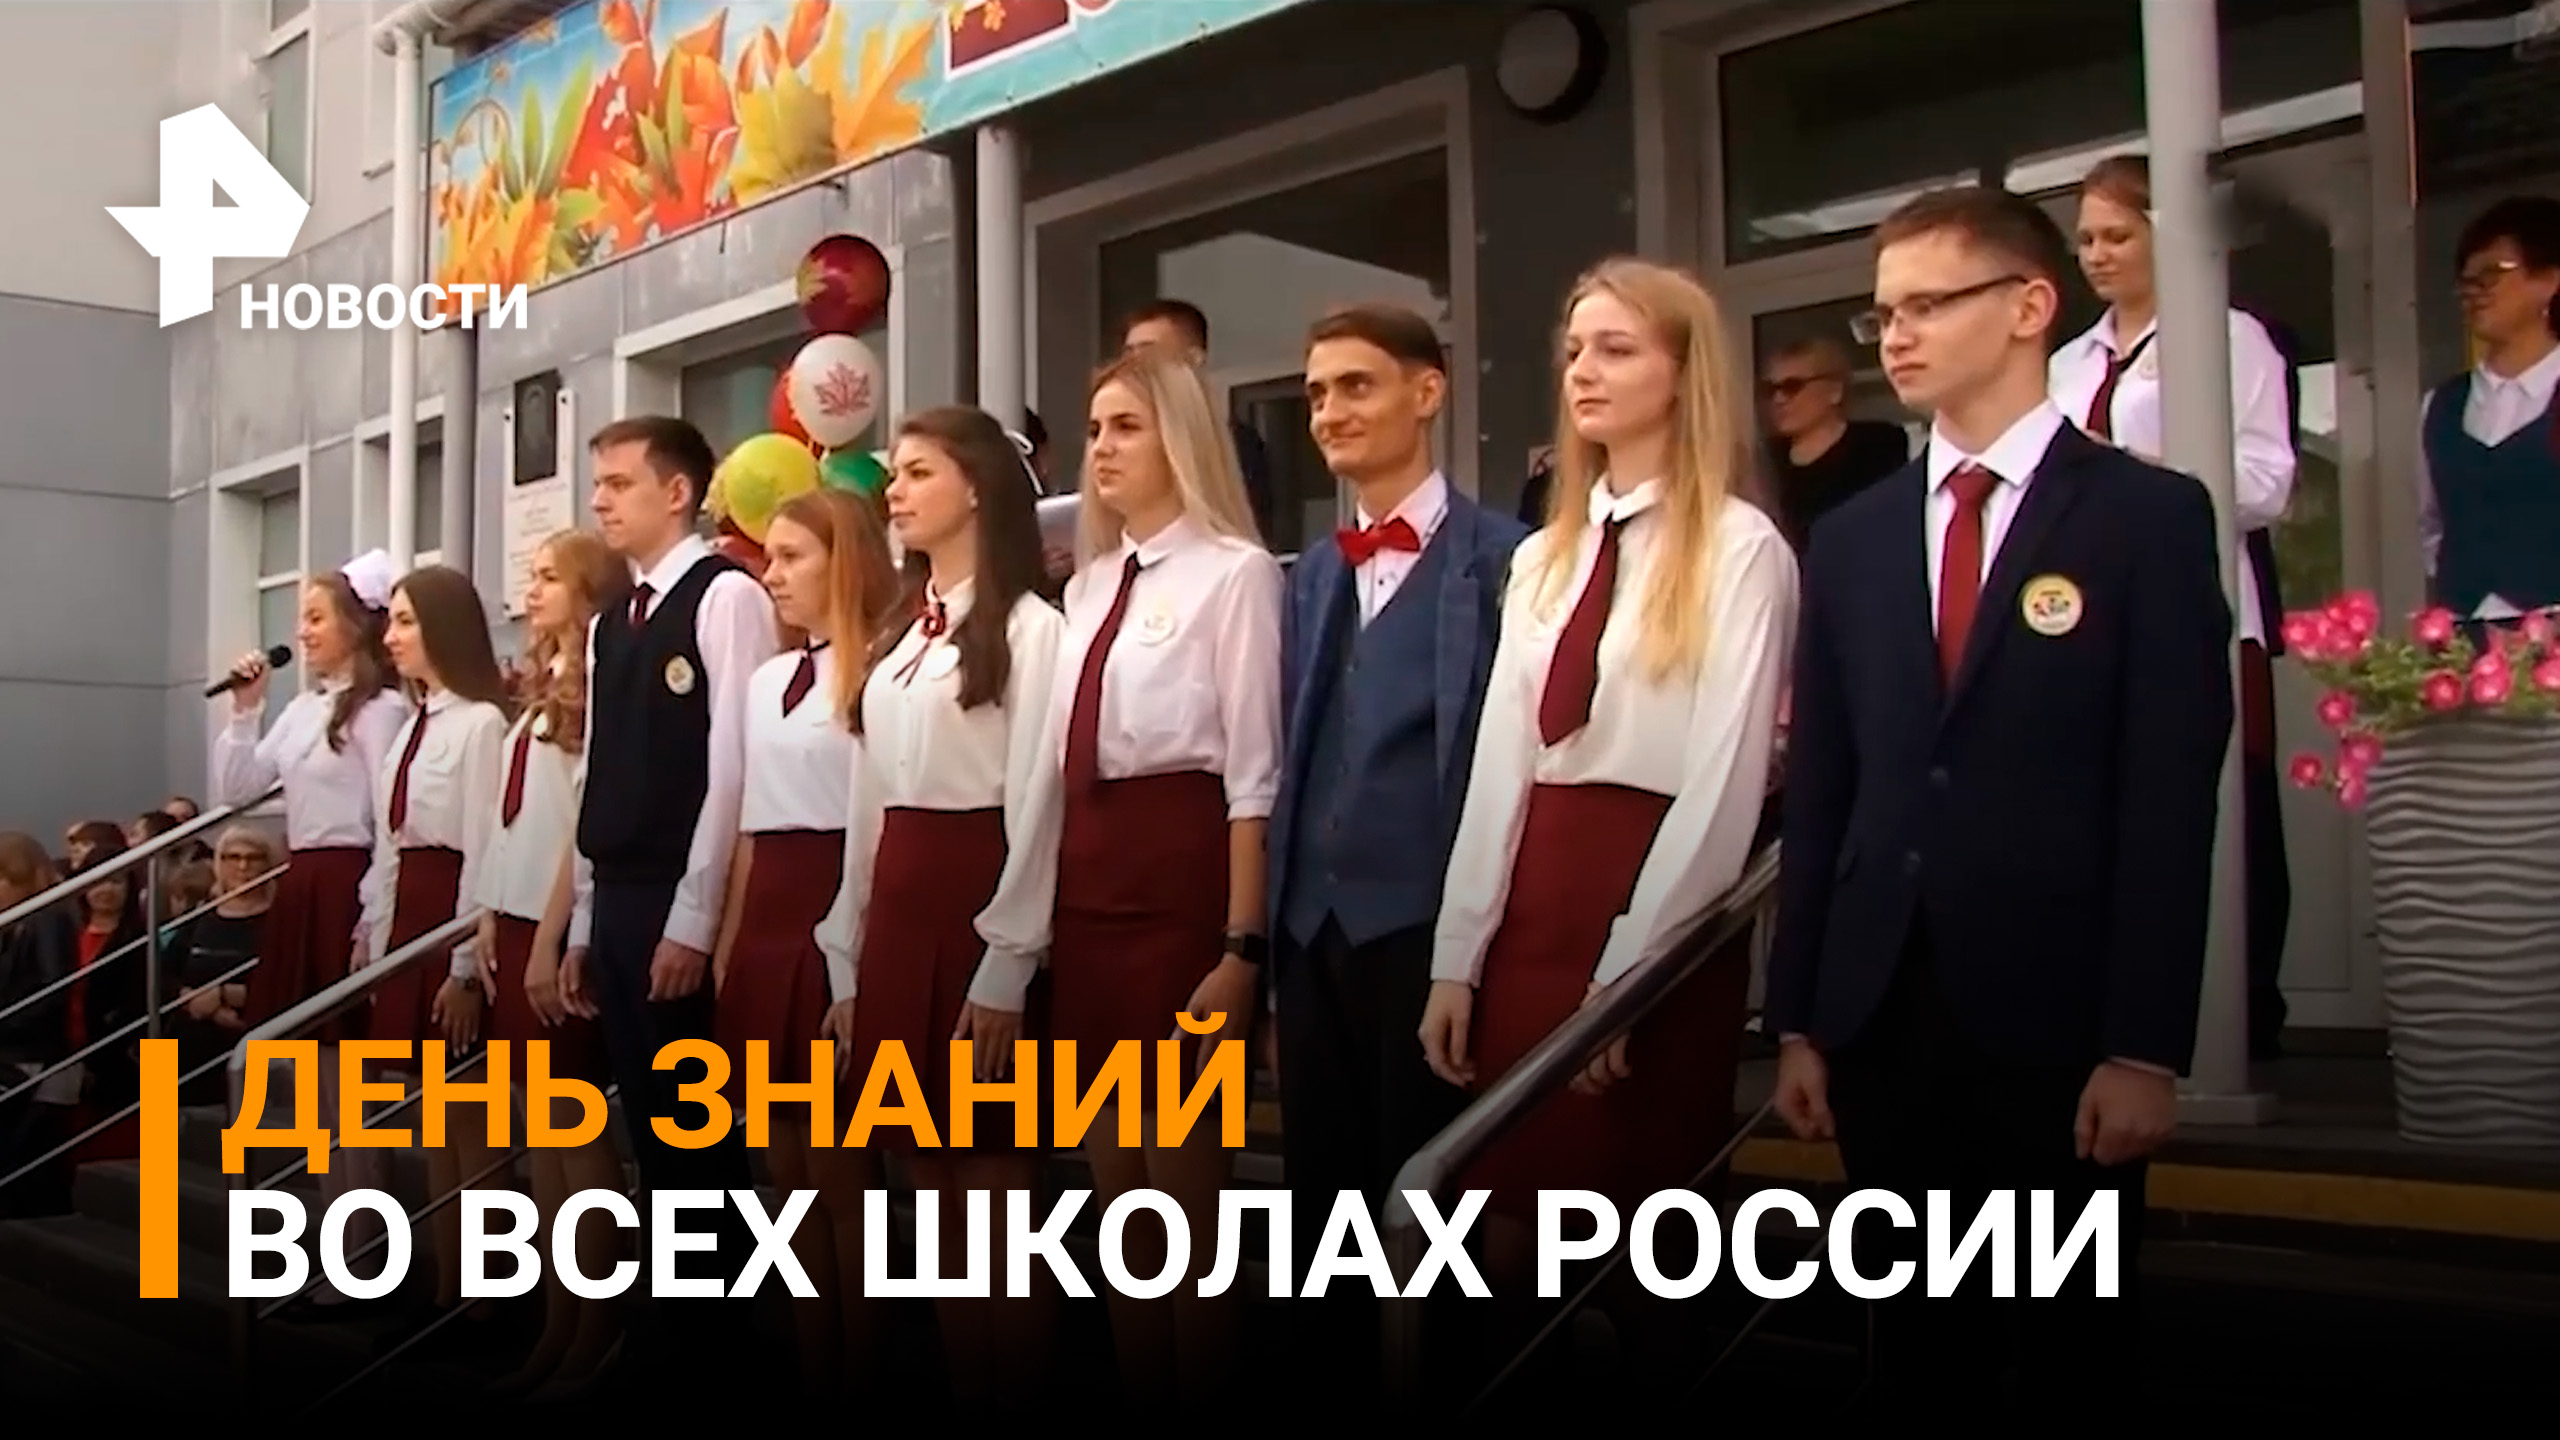 Банты, цветы и улыбки: как в Российской Федерации празднуют День Знаний / РЕН Новости